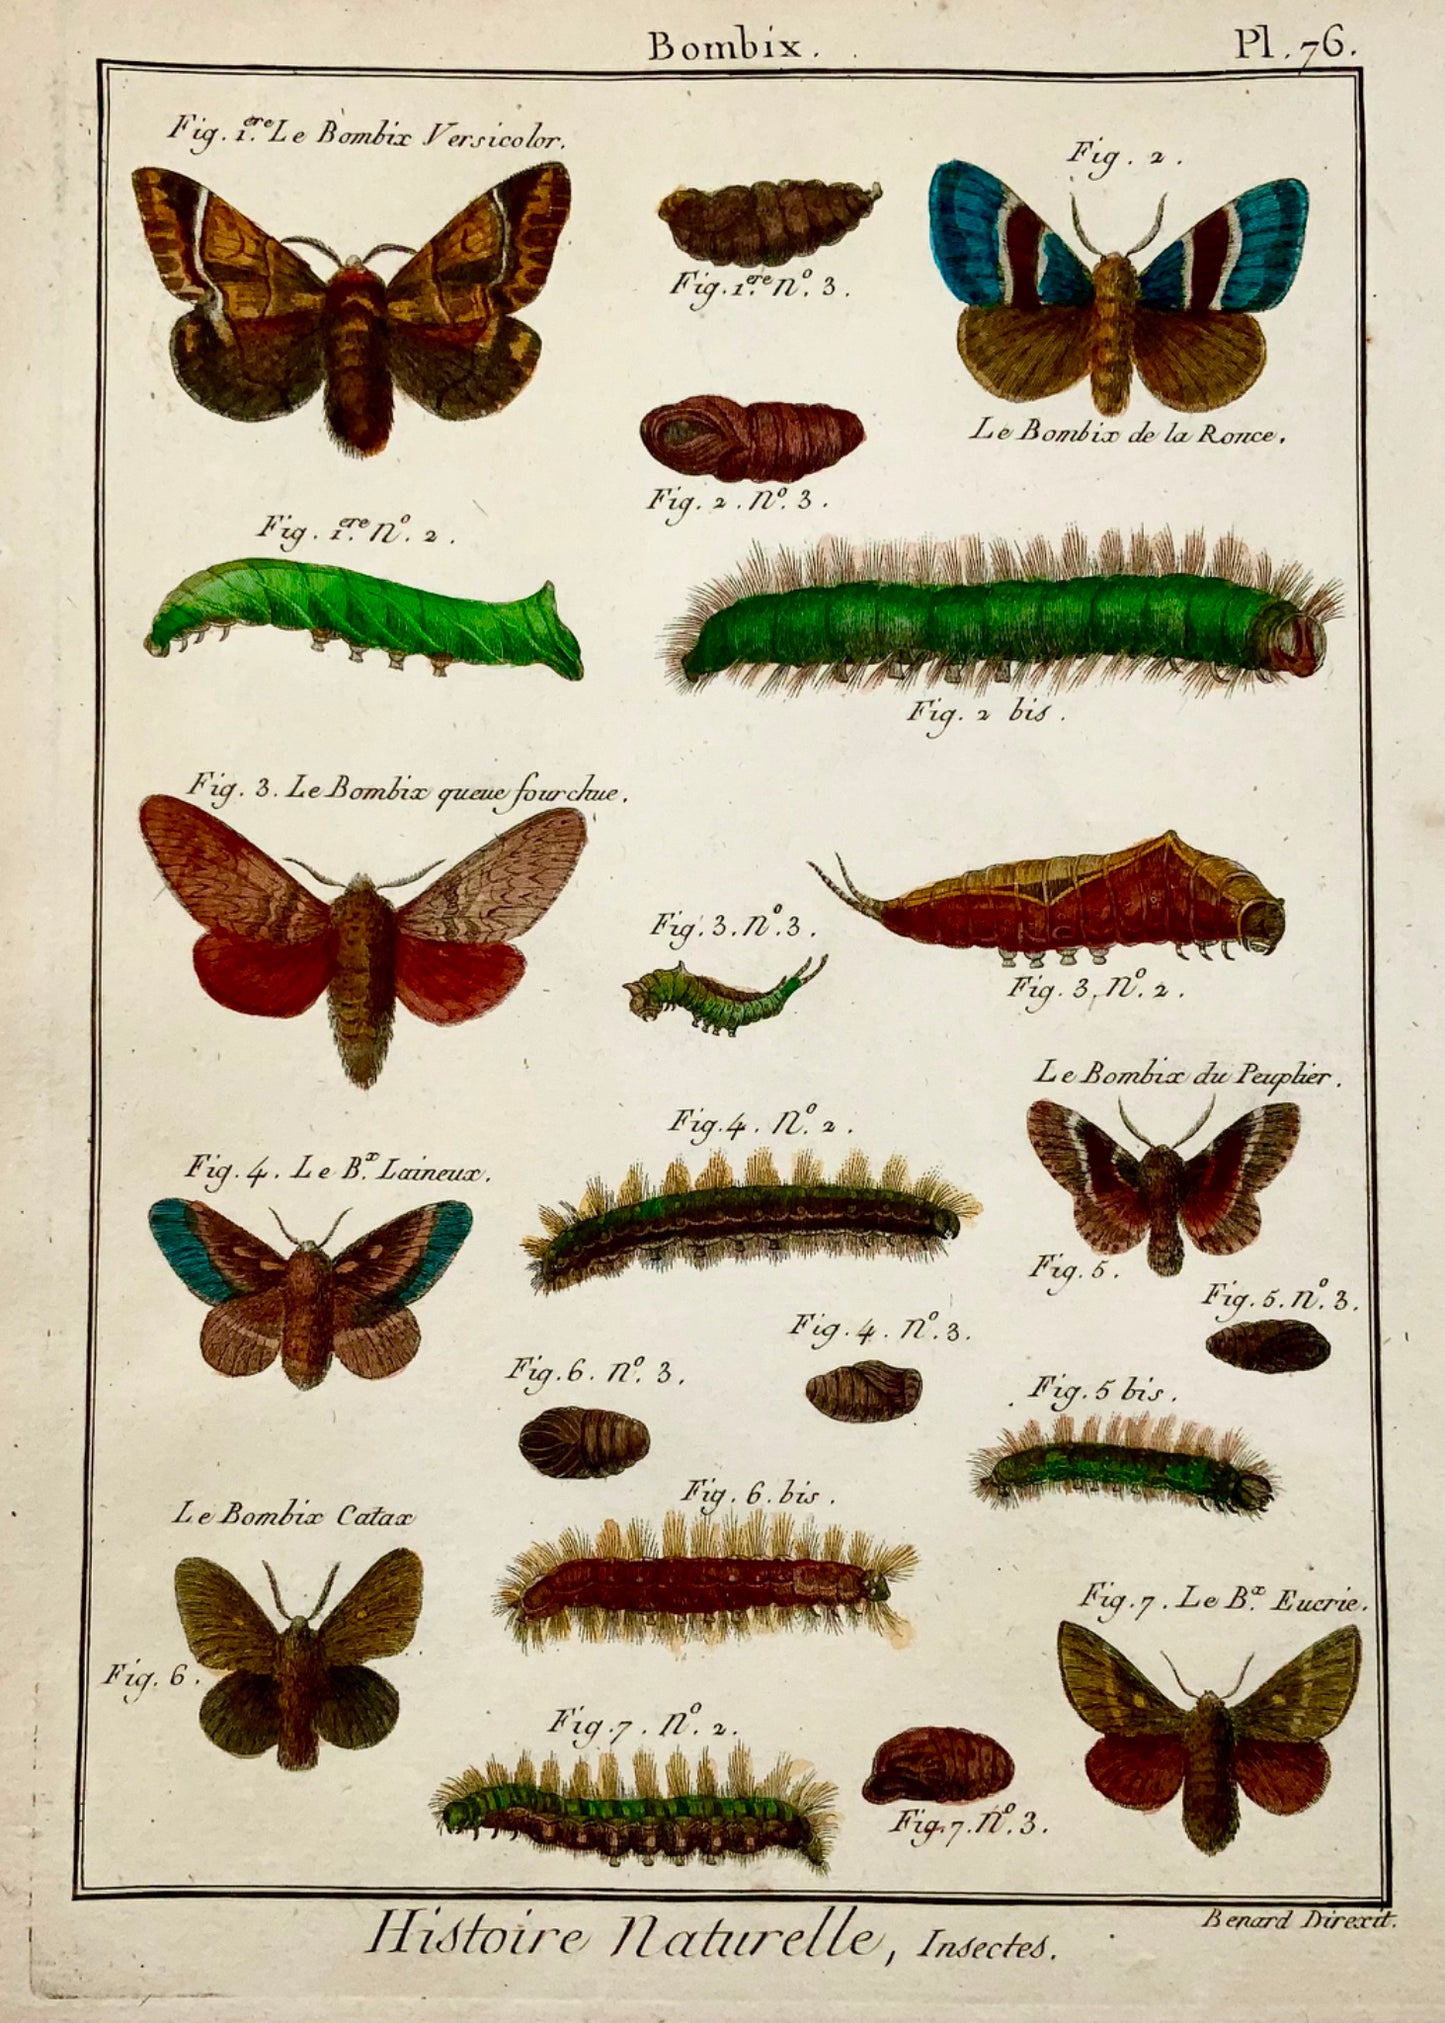 1794 Latreille; Gravure sur cuivre in-quarto manuelle Papillons - Bombix